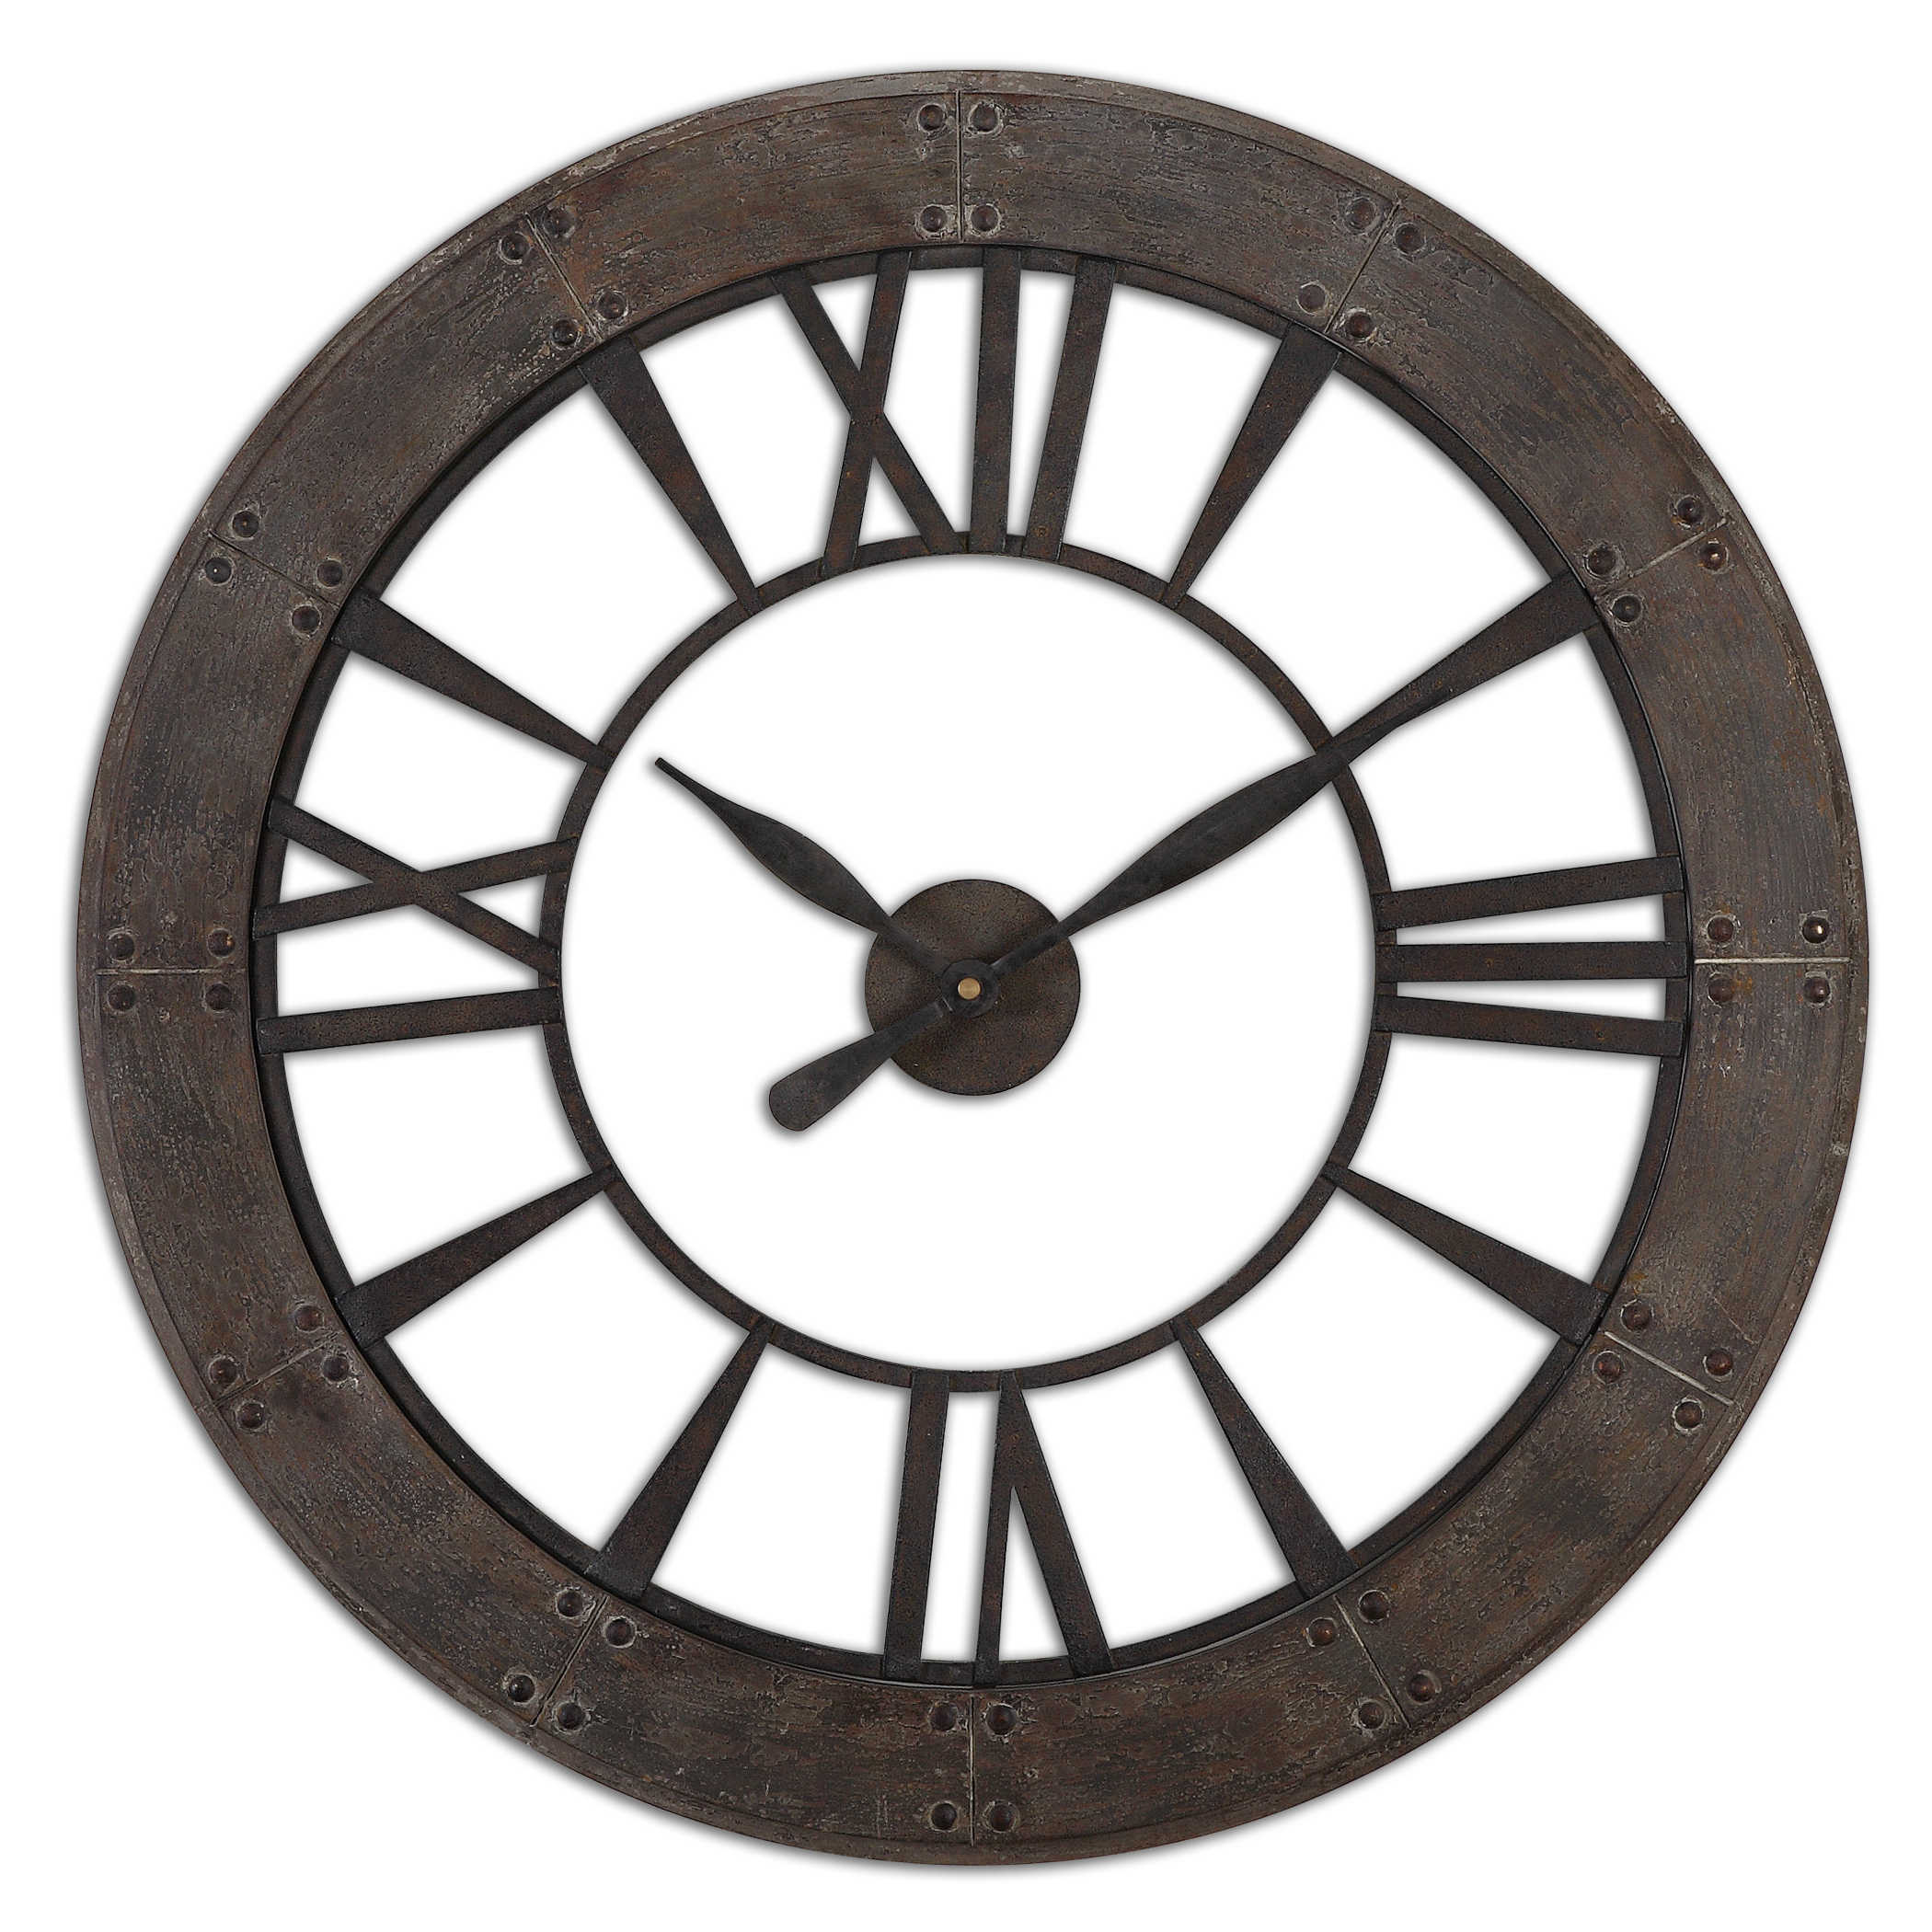 Uttermost Ronan Wall Clock Décor/Home Accent Uttermost FIR / METAL  